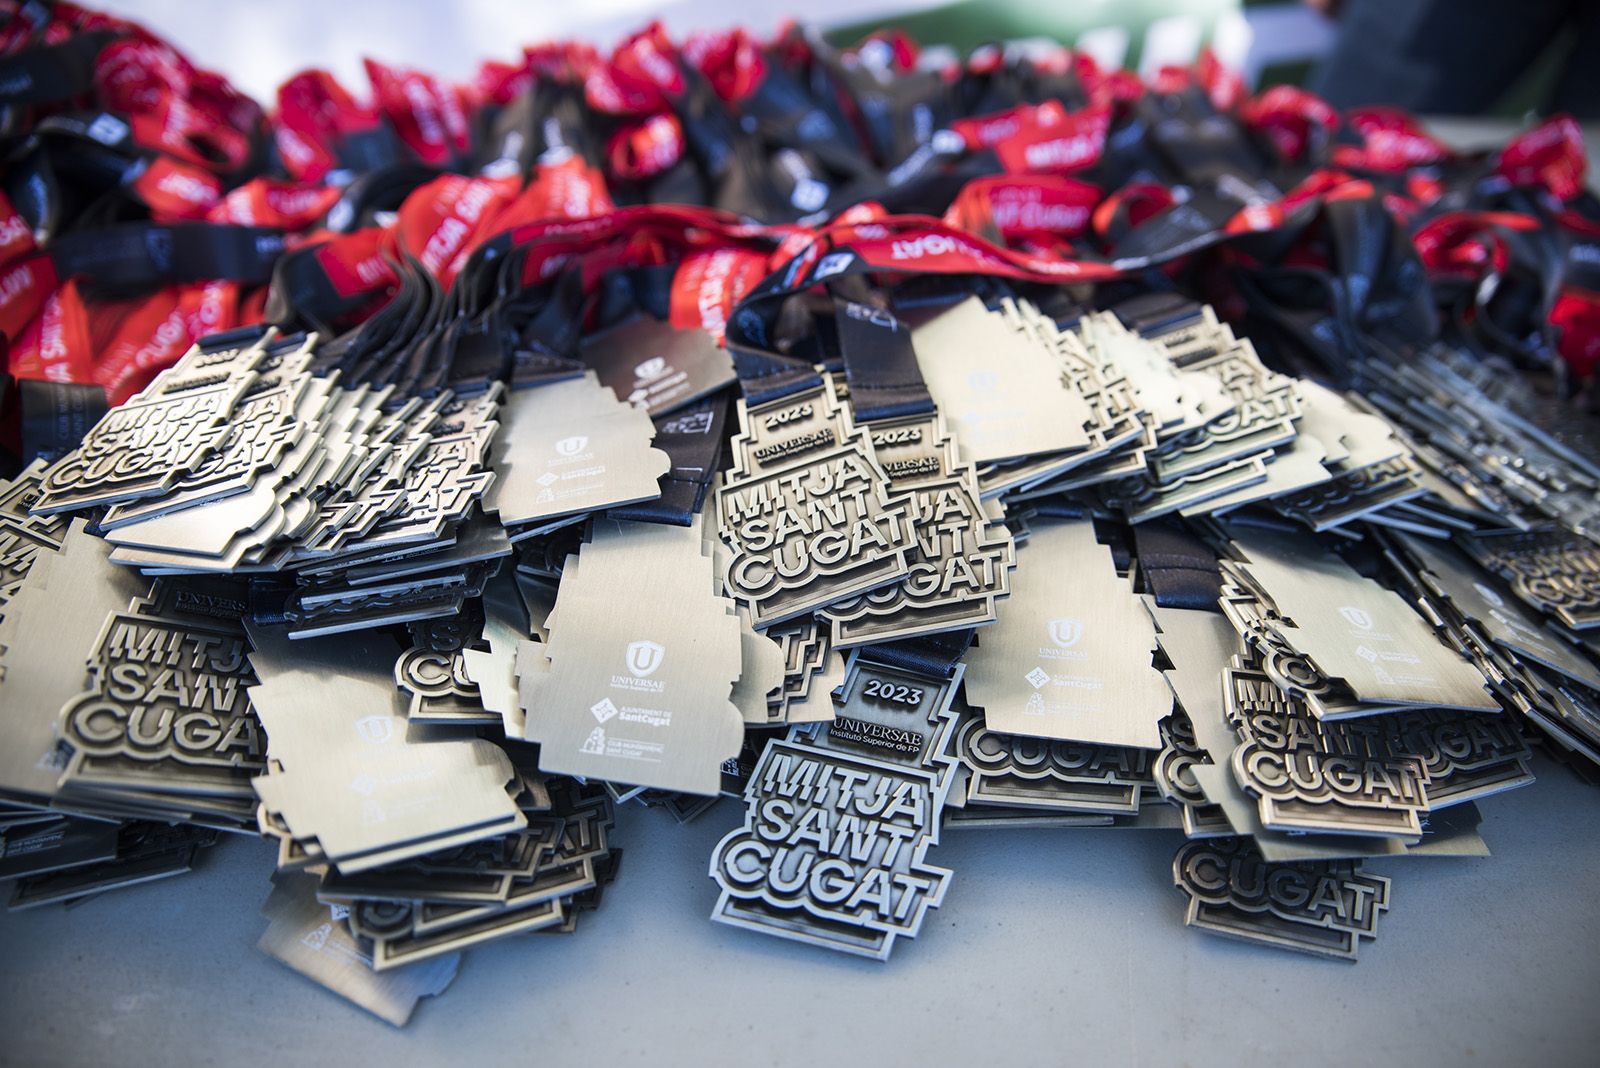 Tots els participants que van acabar la cursa van rebre una medalla durant la 37a Mitja Marató de Sant Cugat. FOTO: Bernat Millet